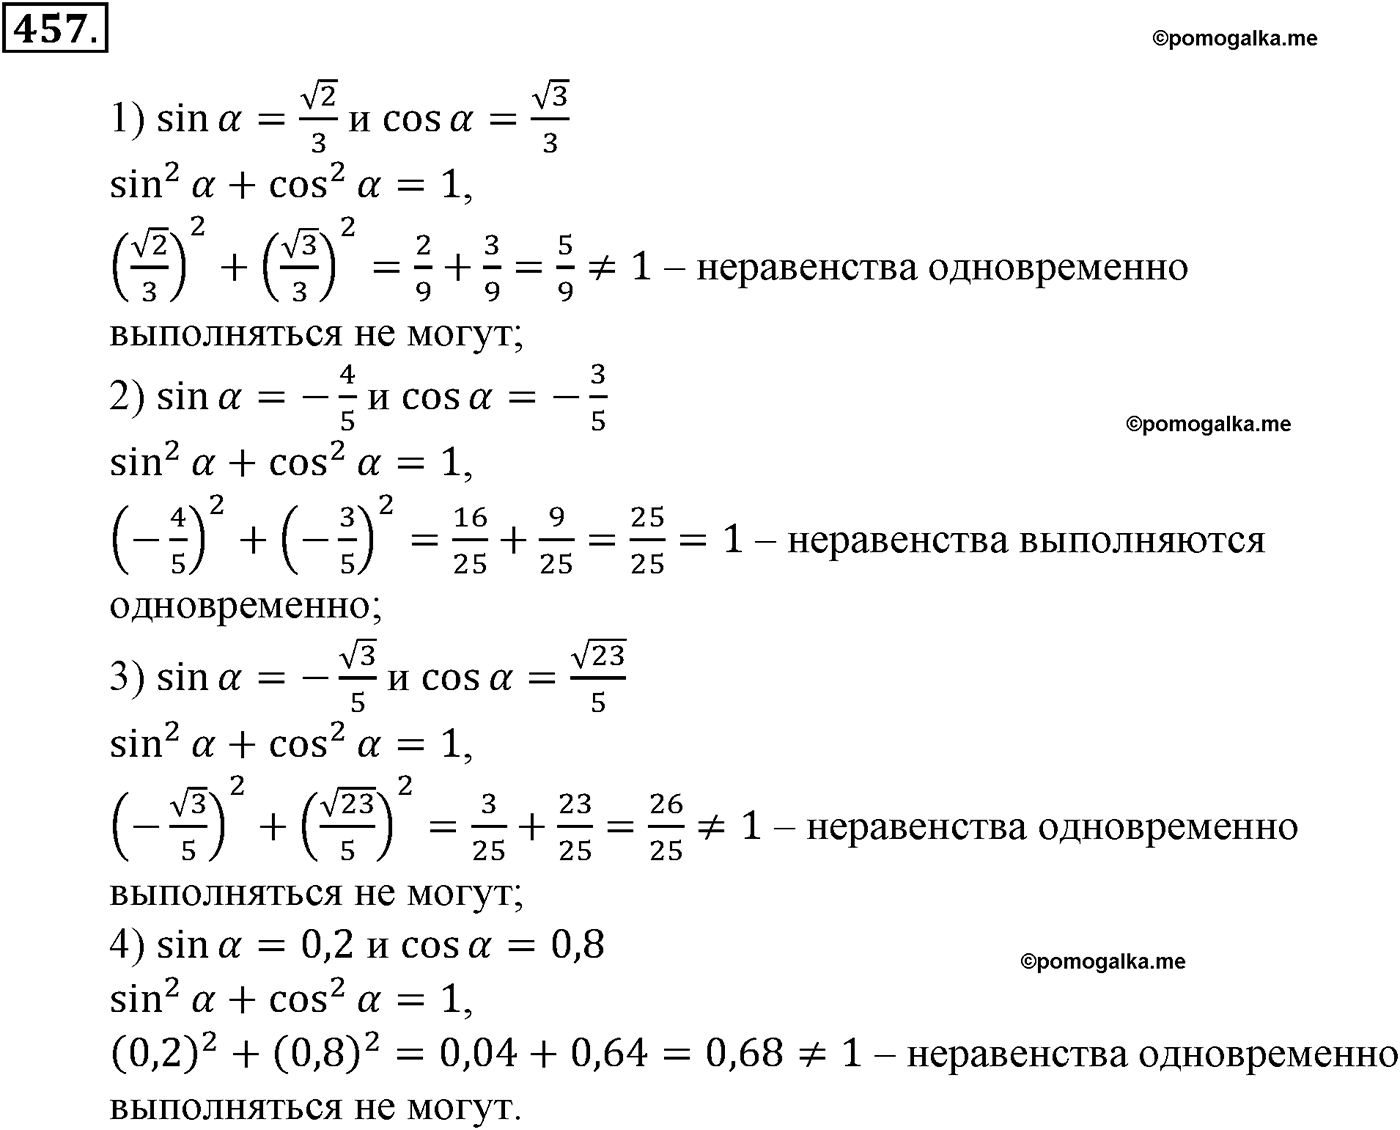 разбор задачи №457 по алгебре за 10-11 класс из учебника Алимова, Колягина